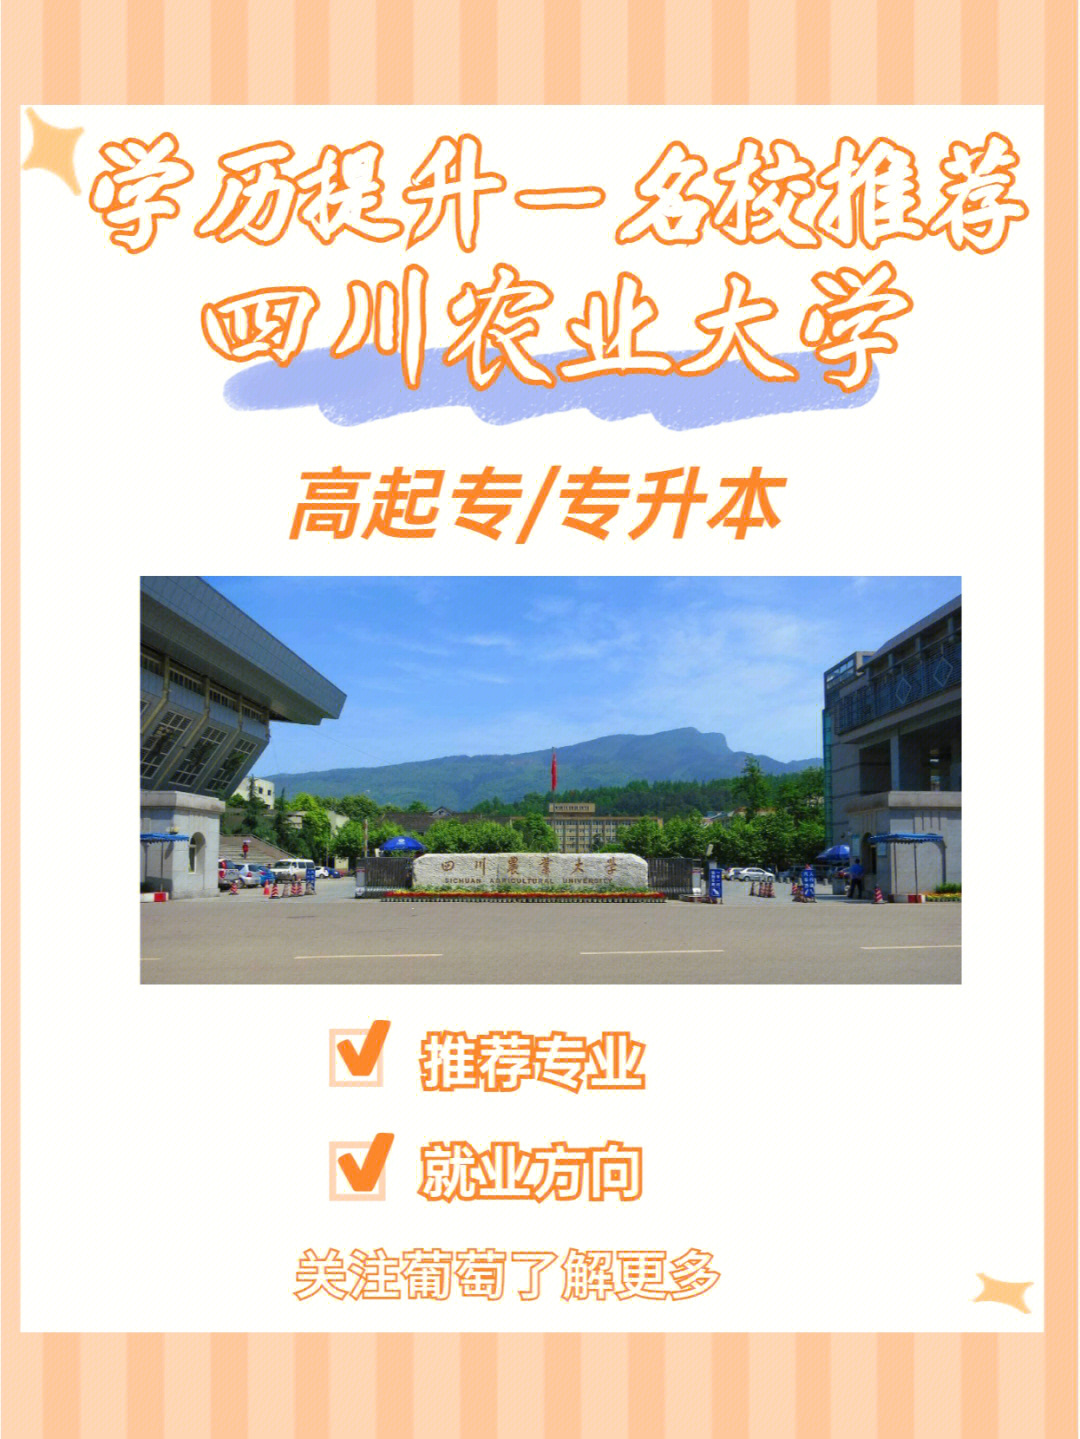 四川农业大学论文封面图片